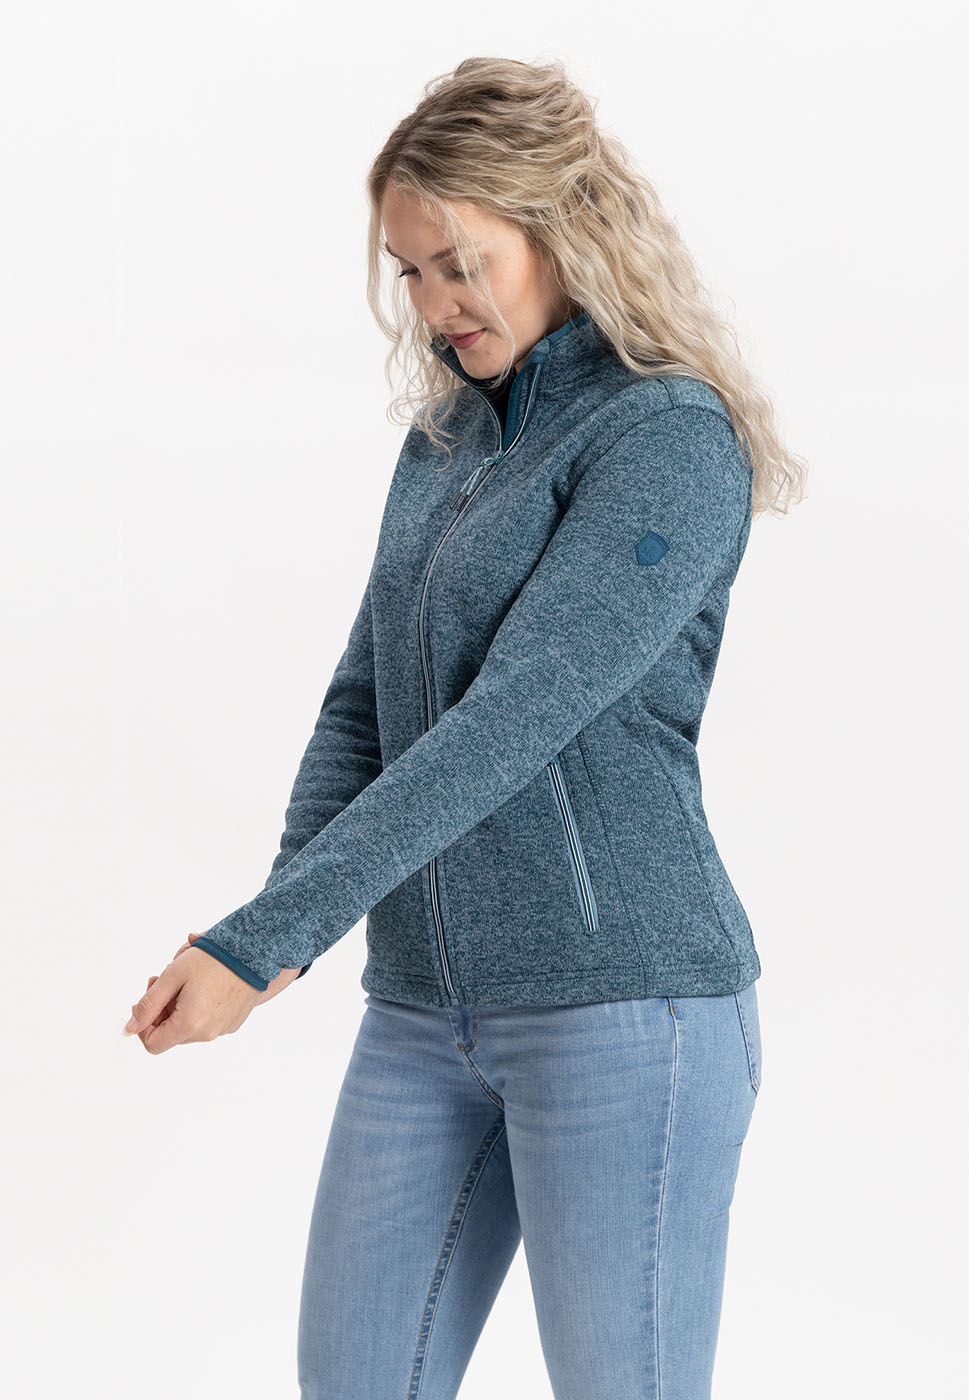 Kjelvik Scandinavian Clothing - Women Knitwear Alexa Blue